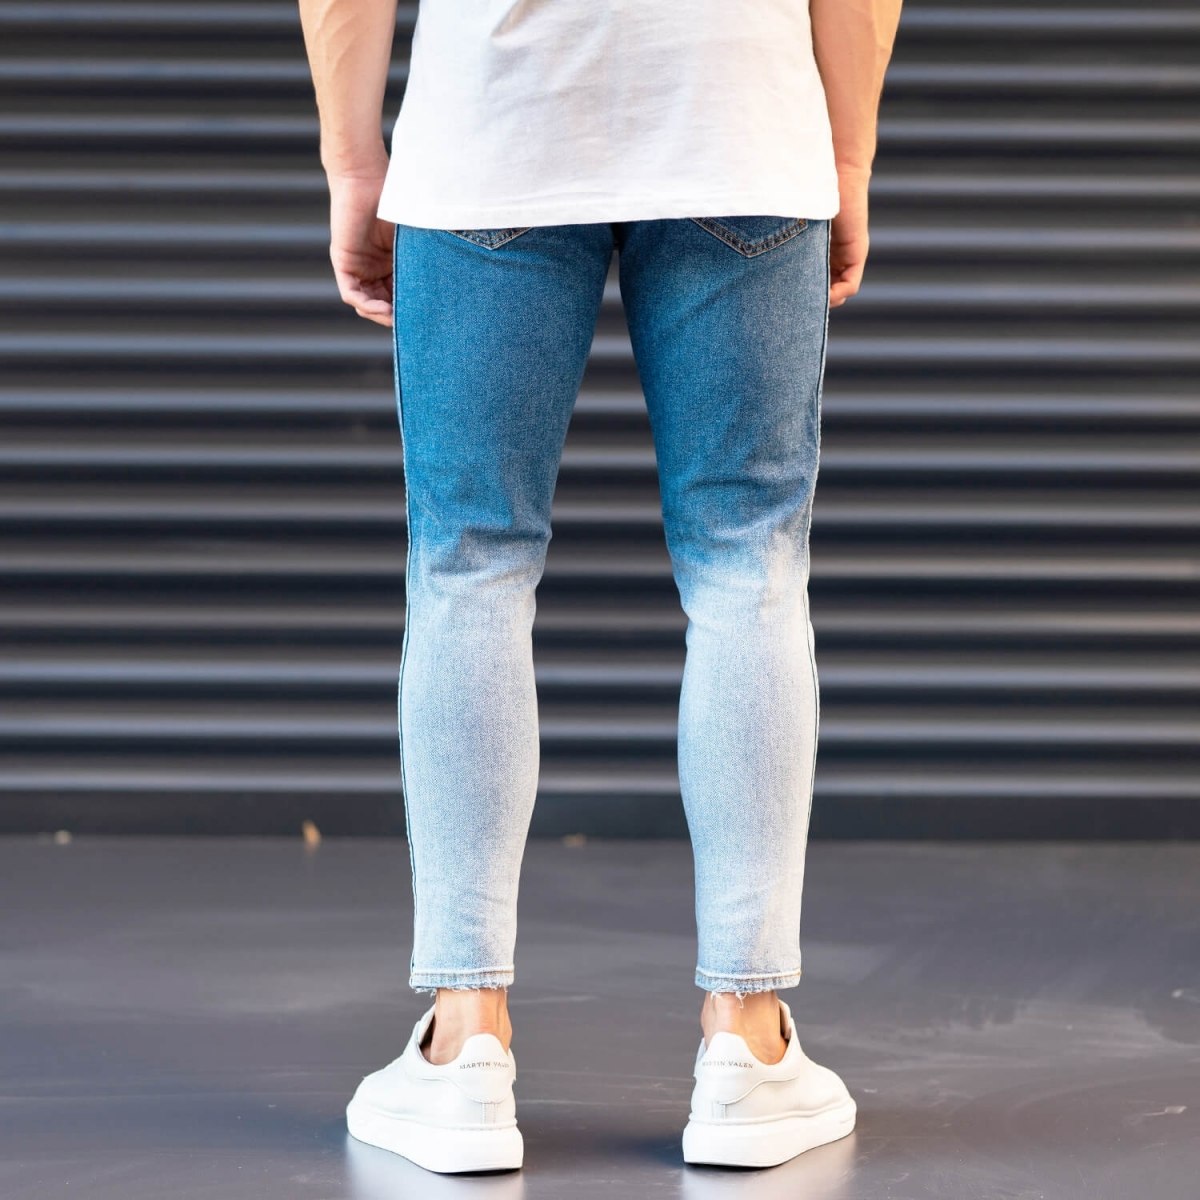 Men's Jeans In Denim&Powder Style | Martin Valen